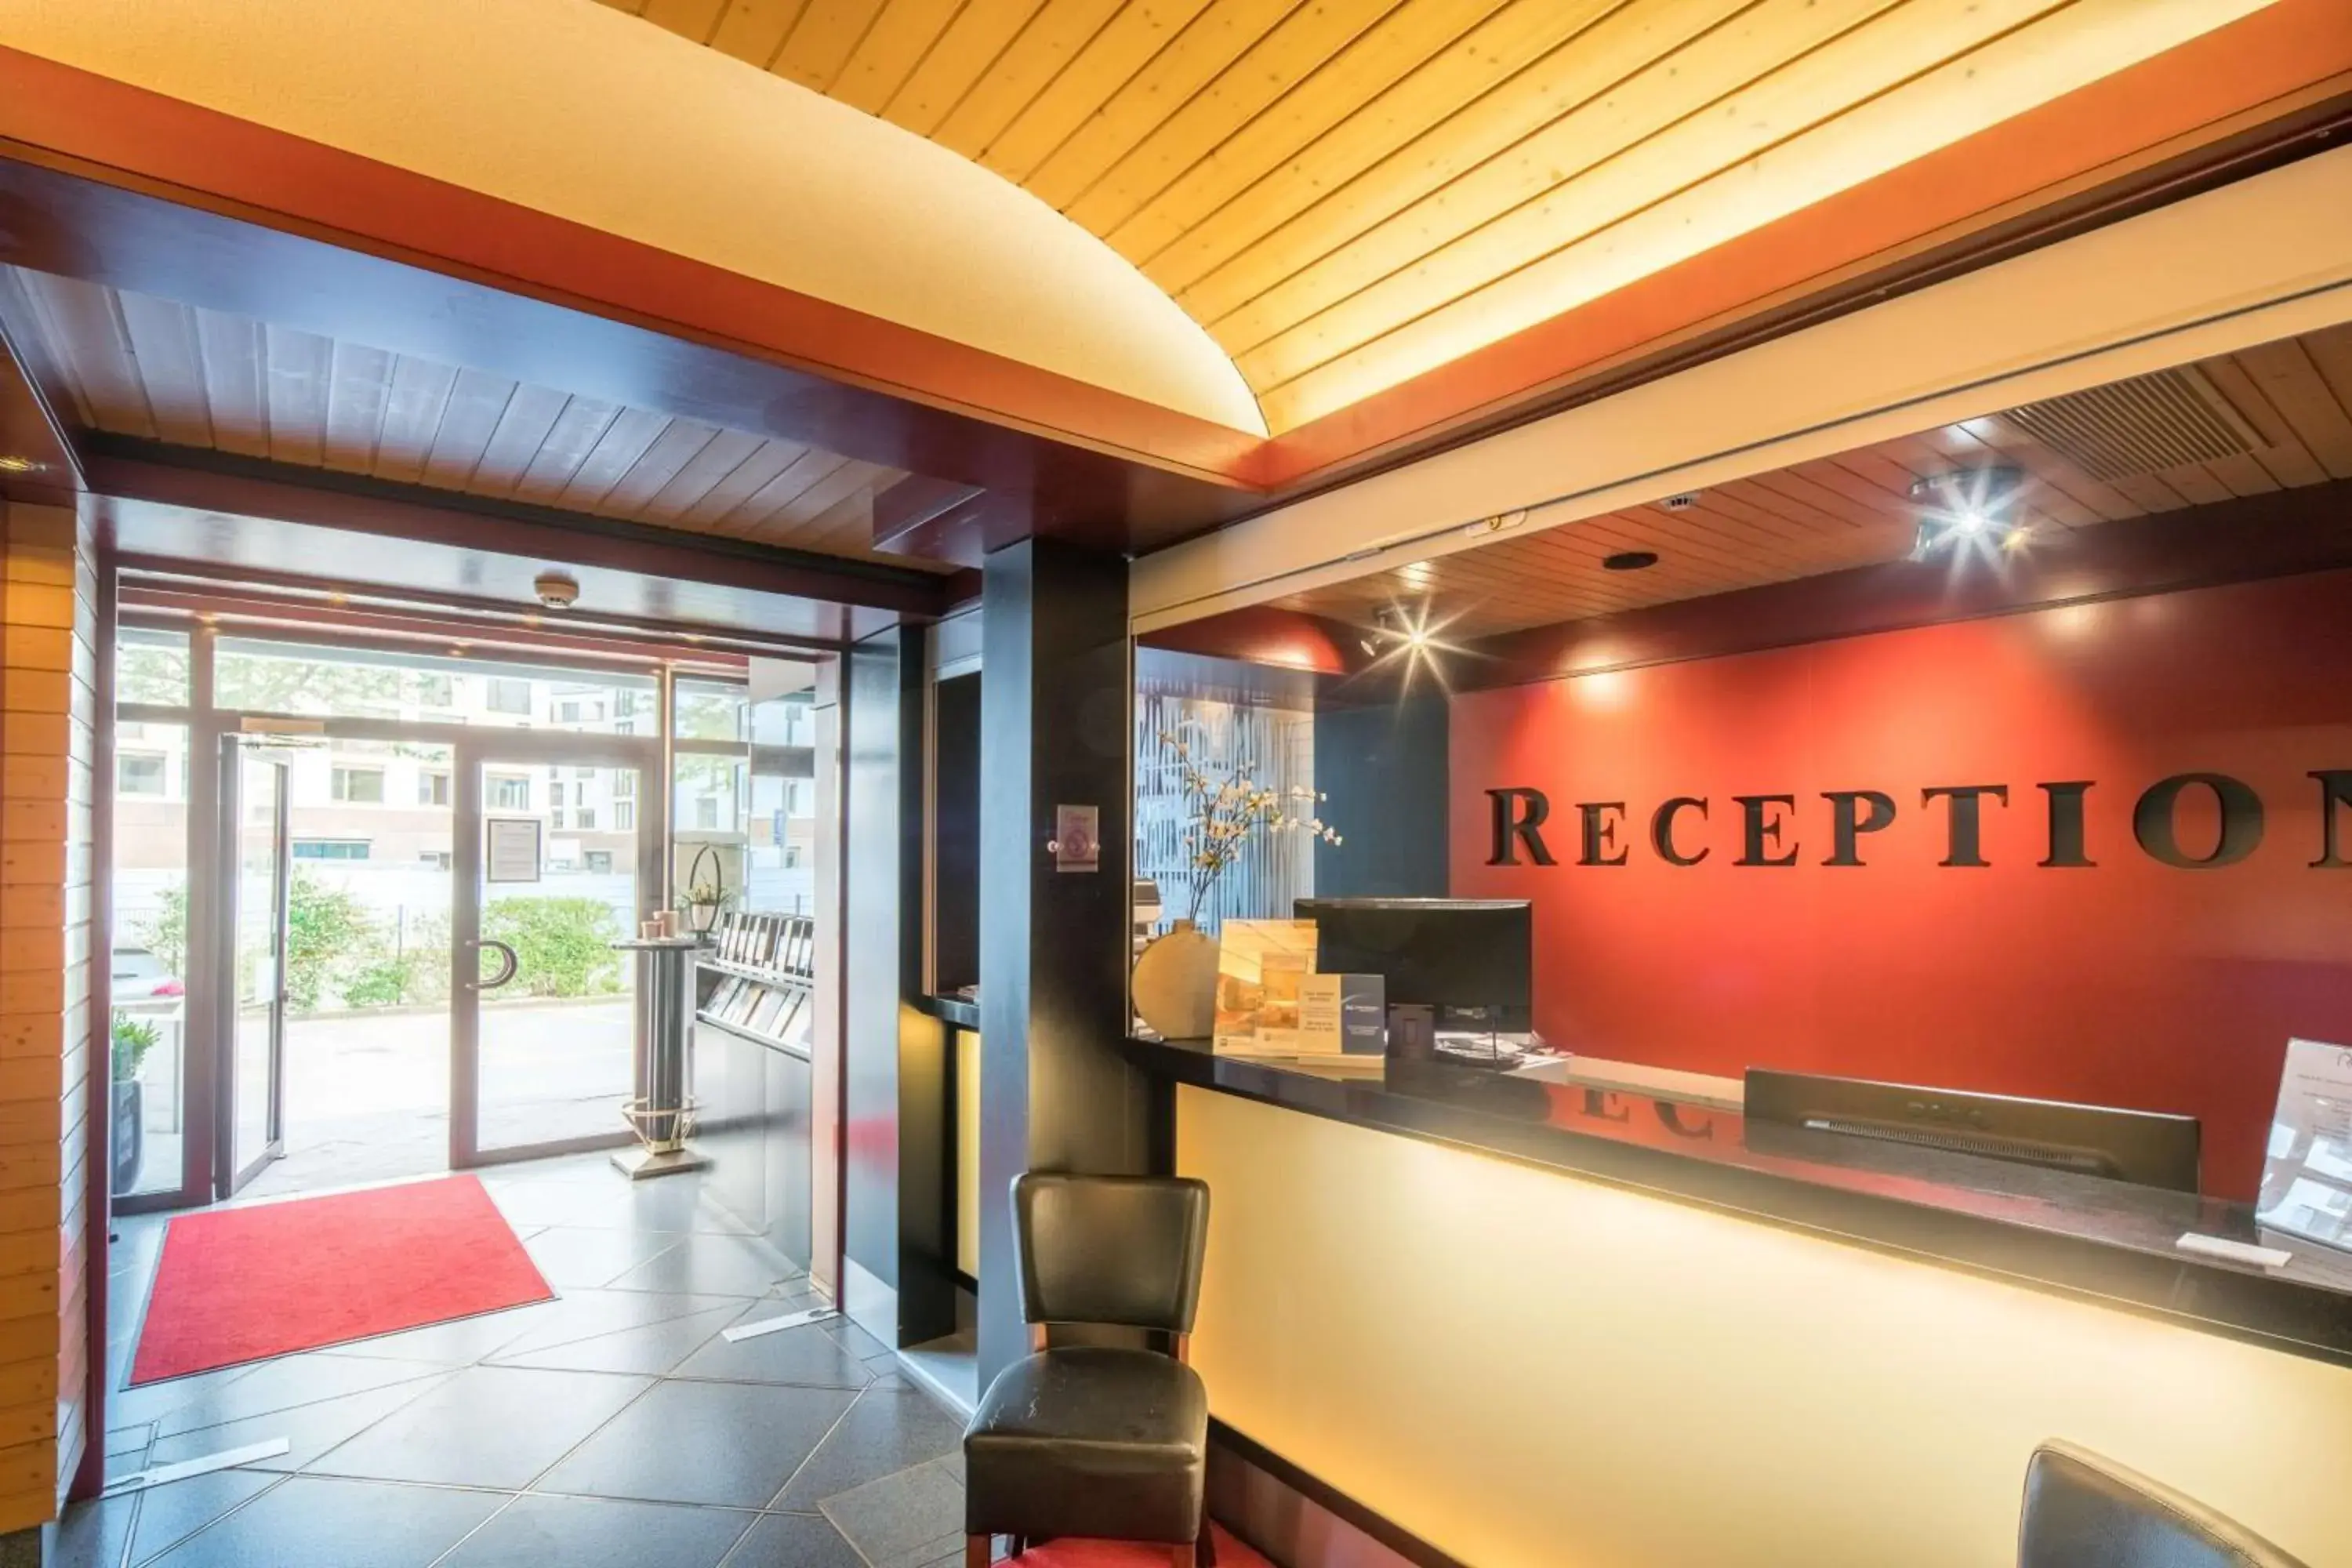 Lobby or reception, Lobby/Reception in Best Western Hotel Rallye